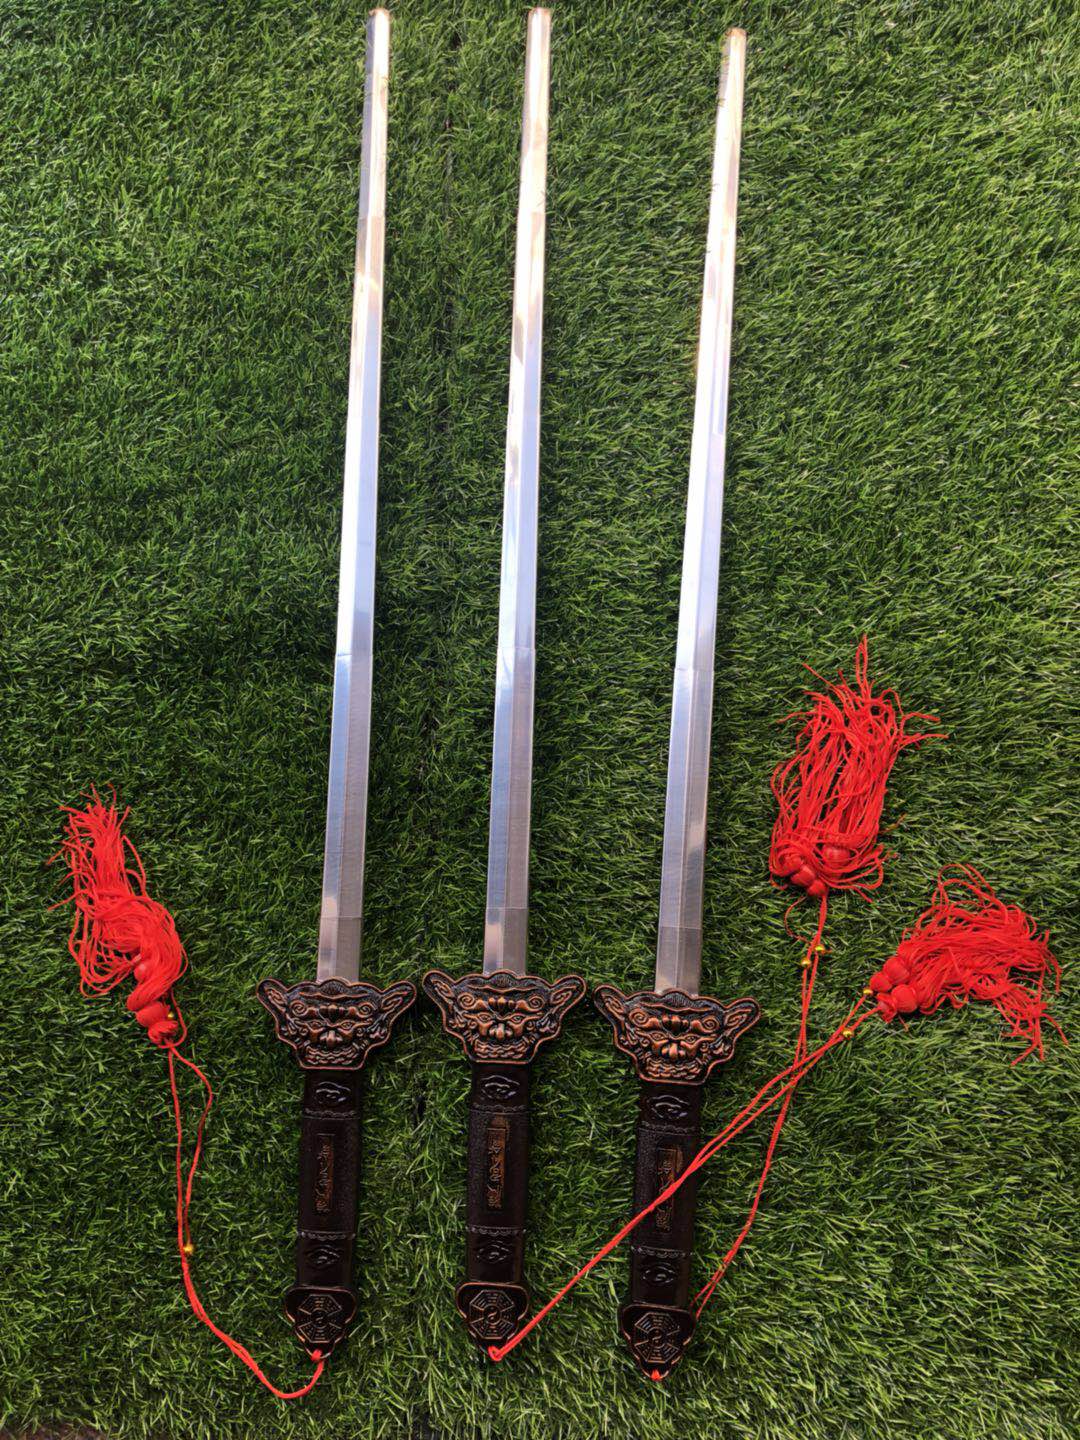 伸缩剑刀不锈钢金属武器铁剑玩具武术剑表演剑儿童玩具刀剑男孩包